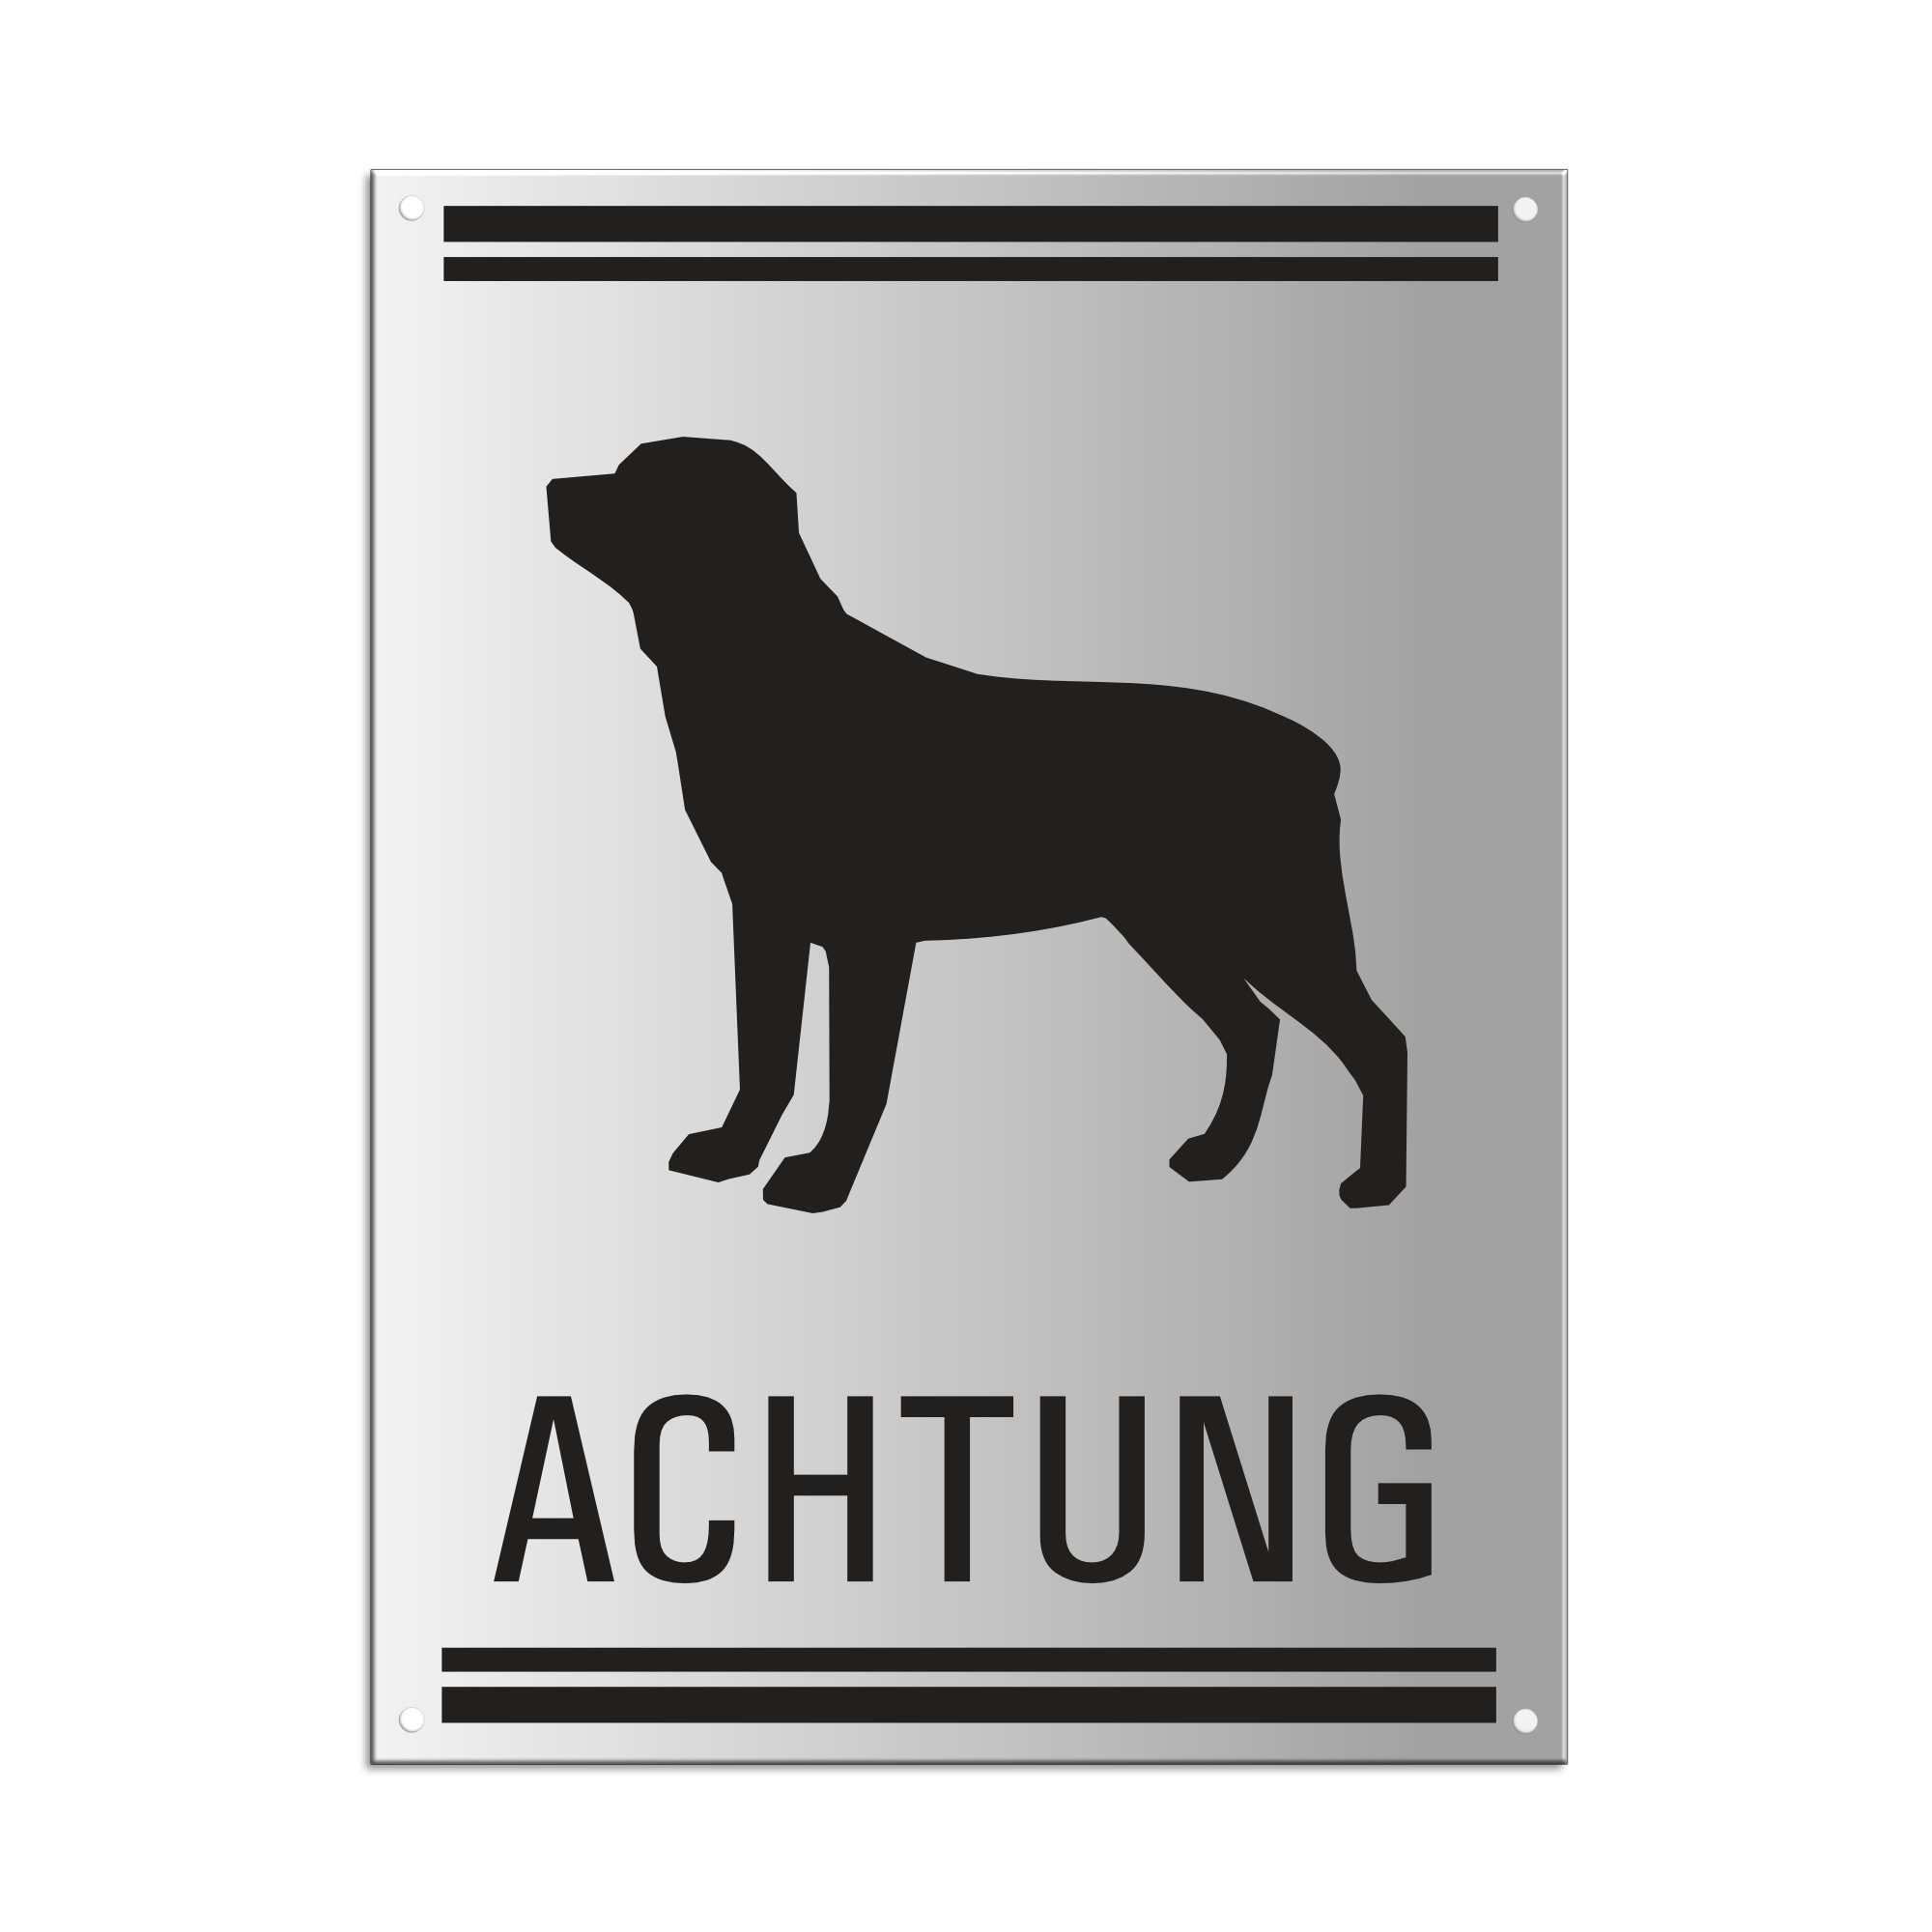 OFFORM DESIGN Warnschild Achtung Hund 200 x 150 mm 4-fach gelocht Aluminium matt eloxiert